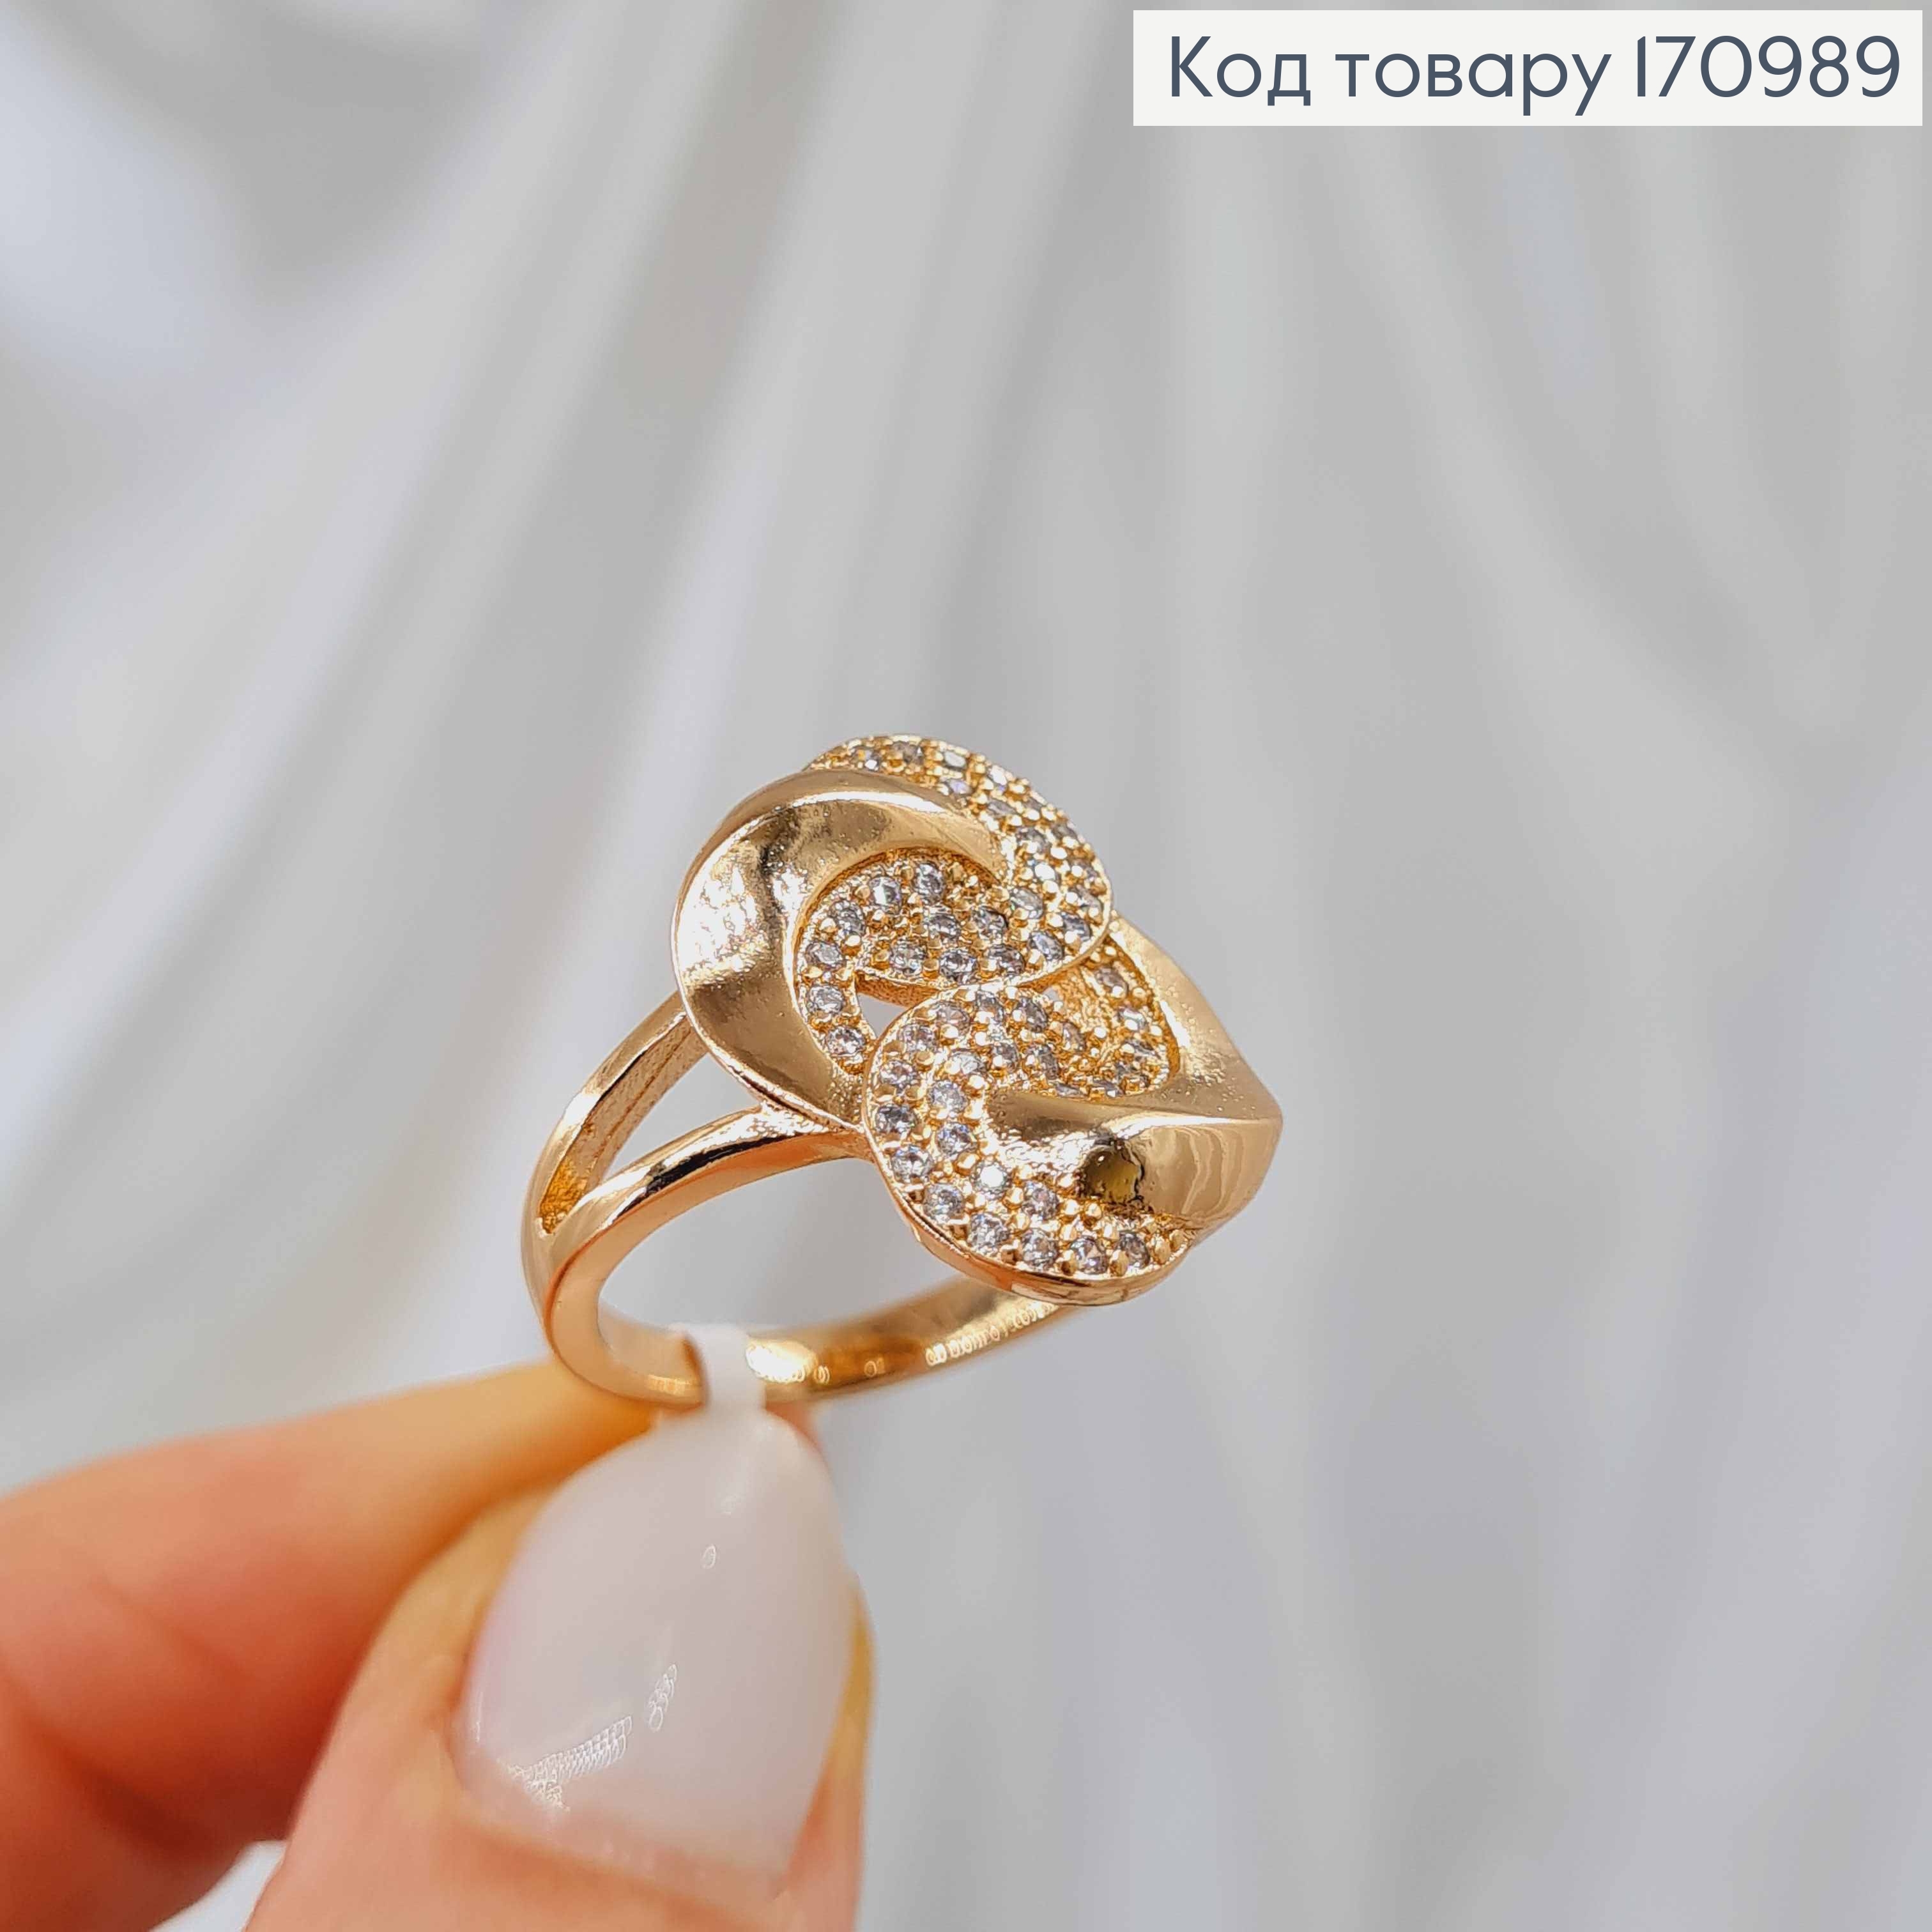 Кольцо "Звенья" украшено блестящими камнями, Xuping 18К 170989 фото 2